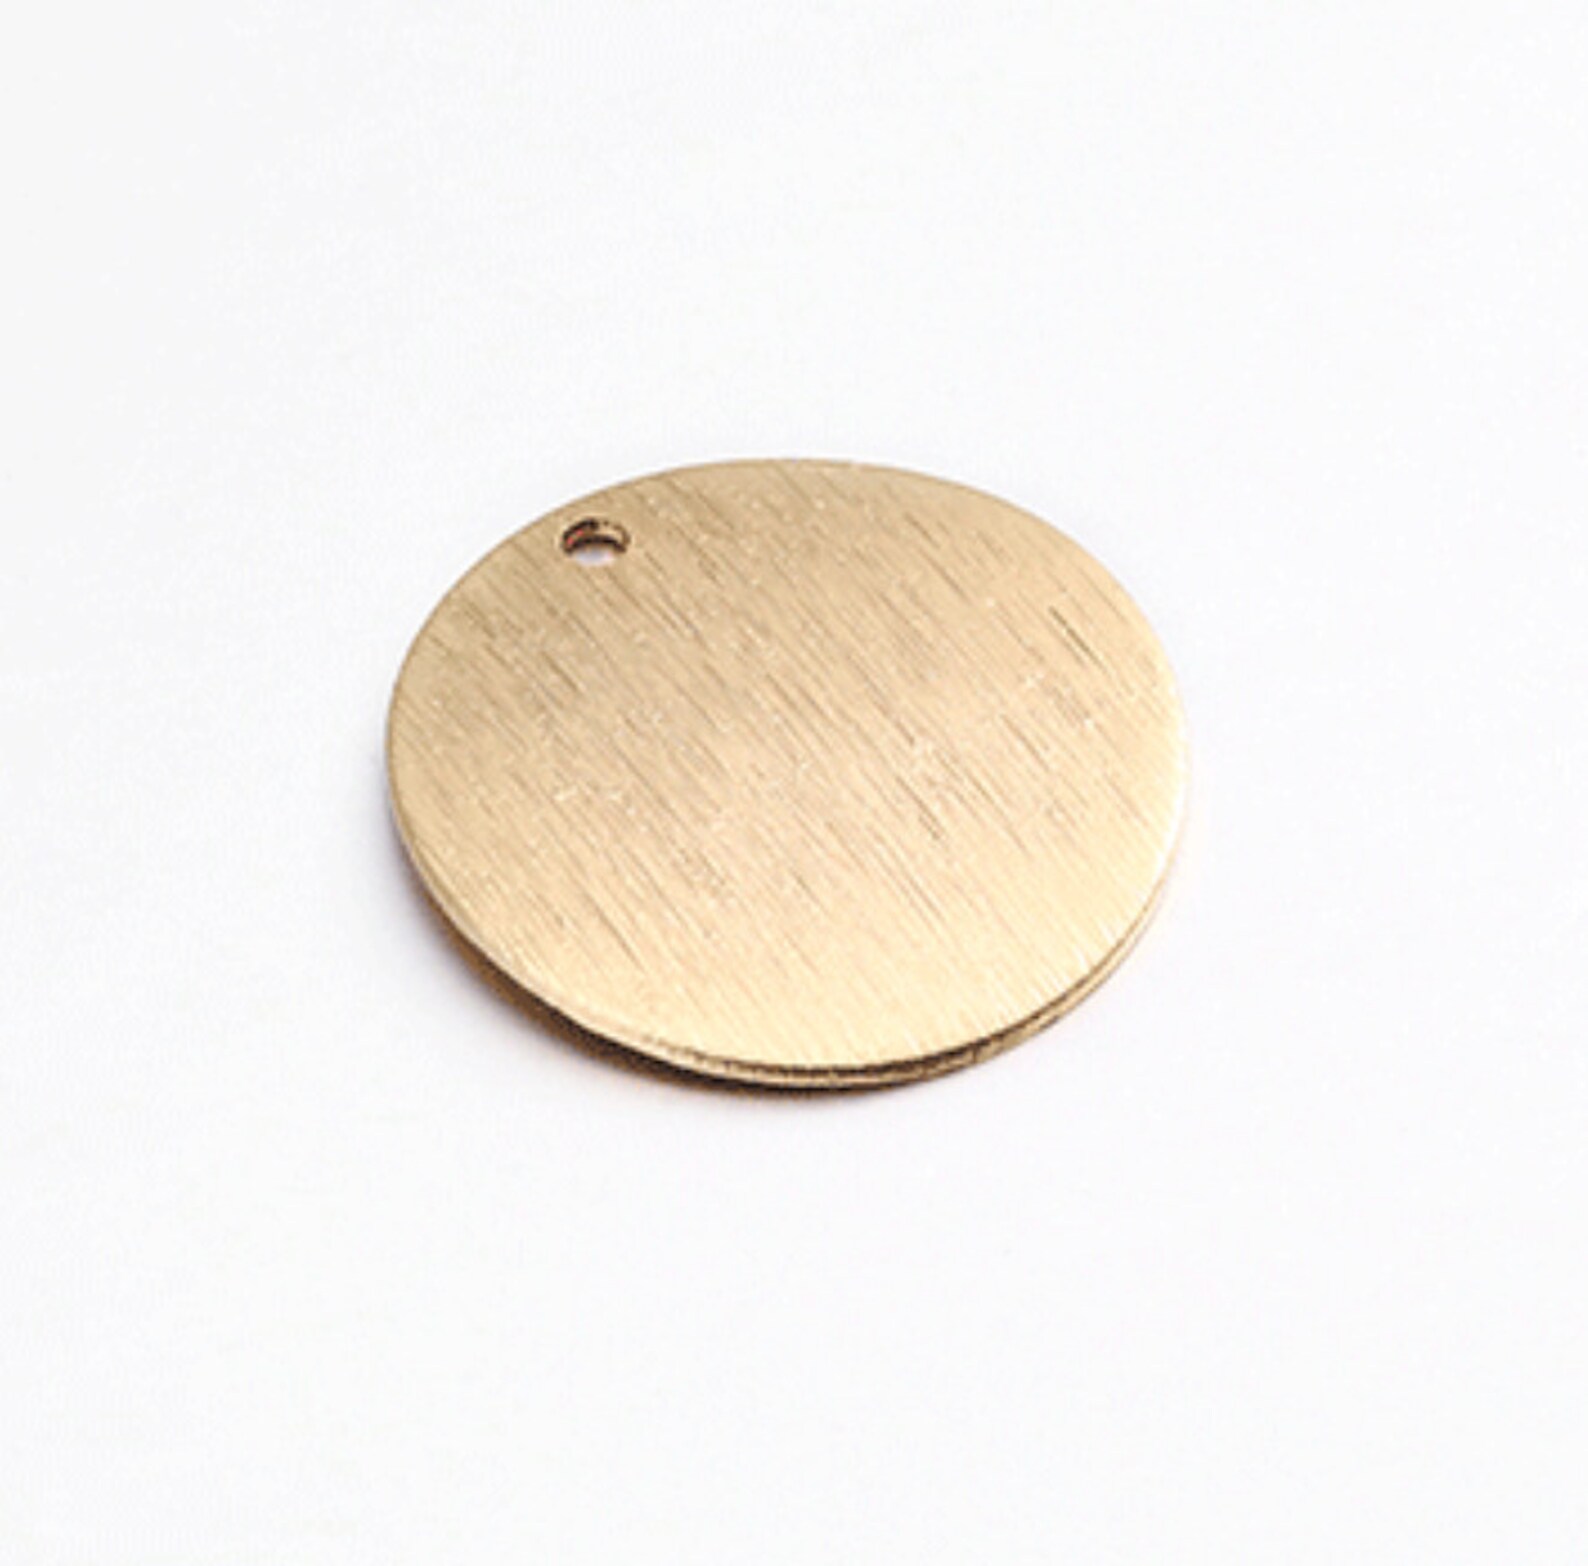 Круг 15 мм. Золотая пластина для подвески круглая. Деревянные круглые диски для кулонов. Бижутерия круги. Середки круг 15 мм.